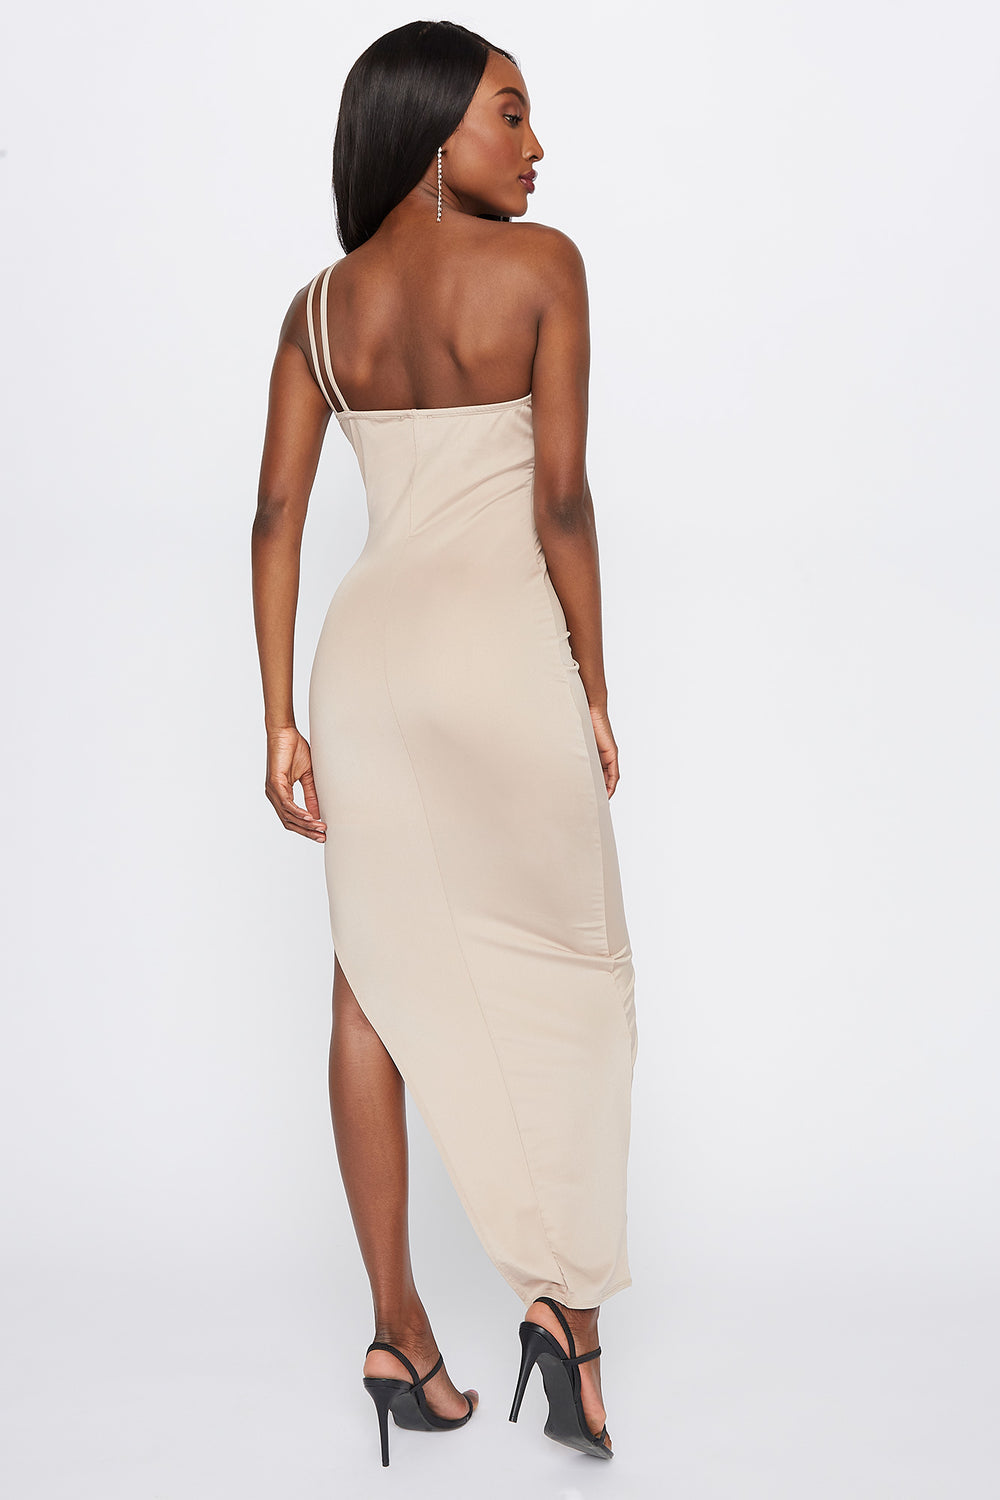 one shoulder tan dress